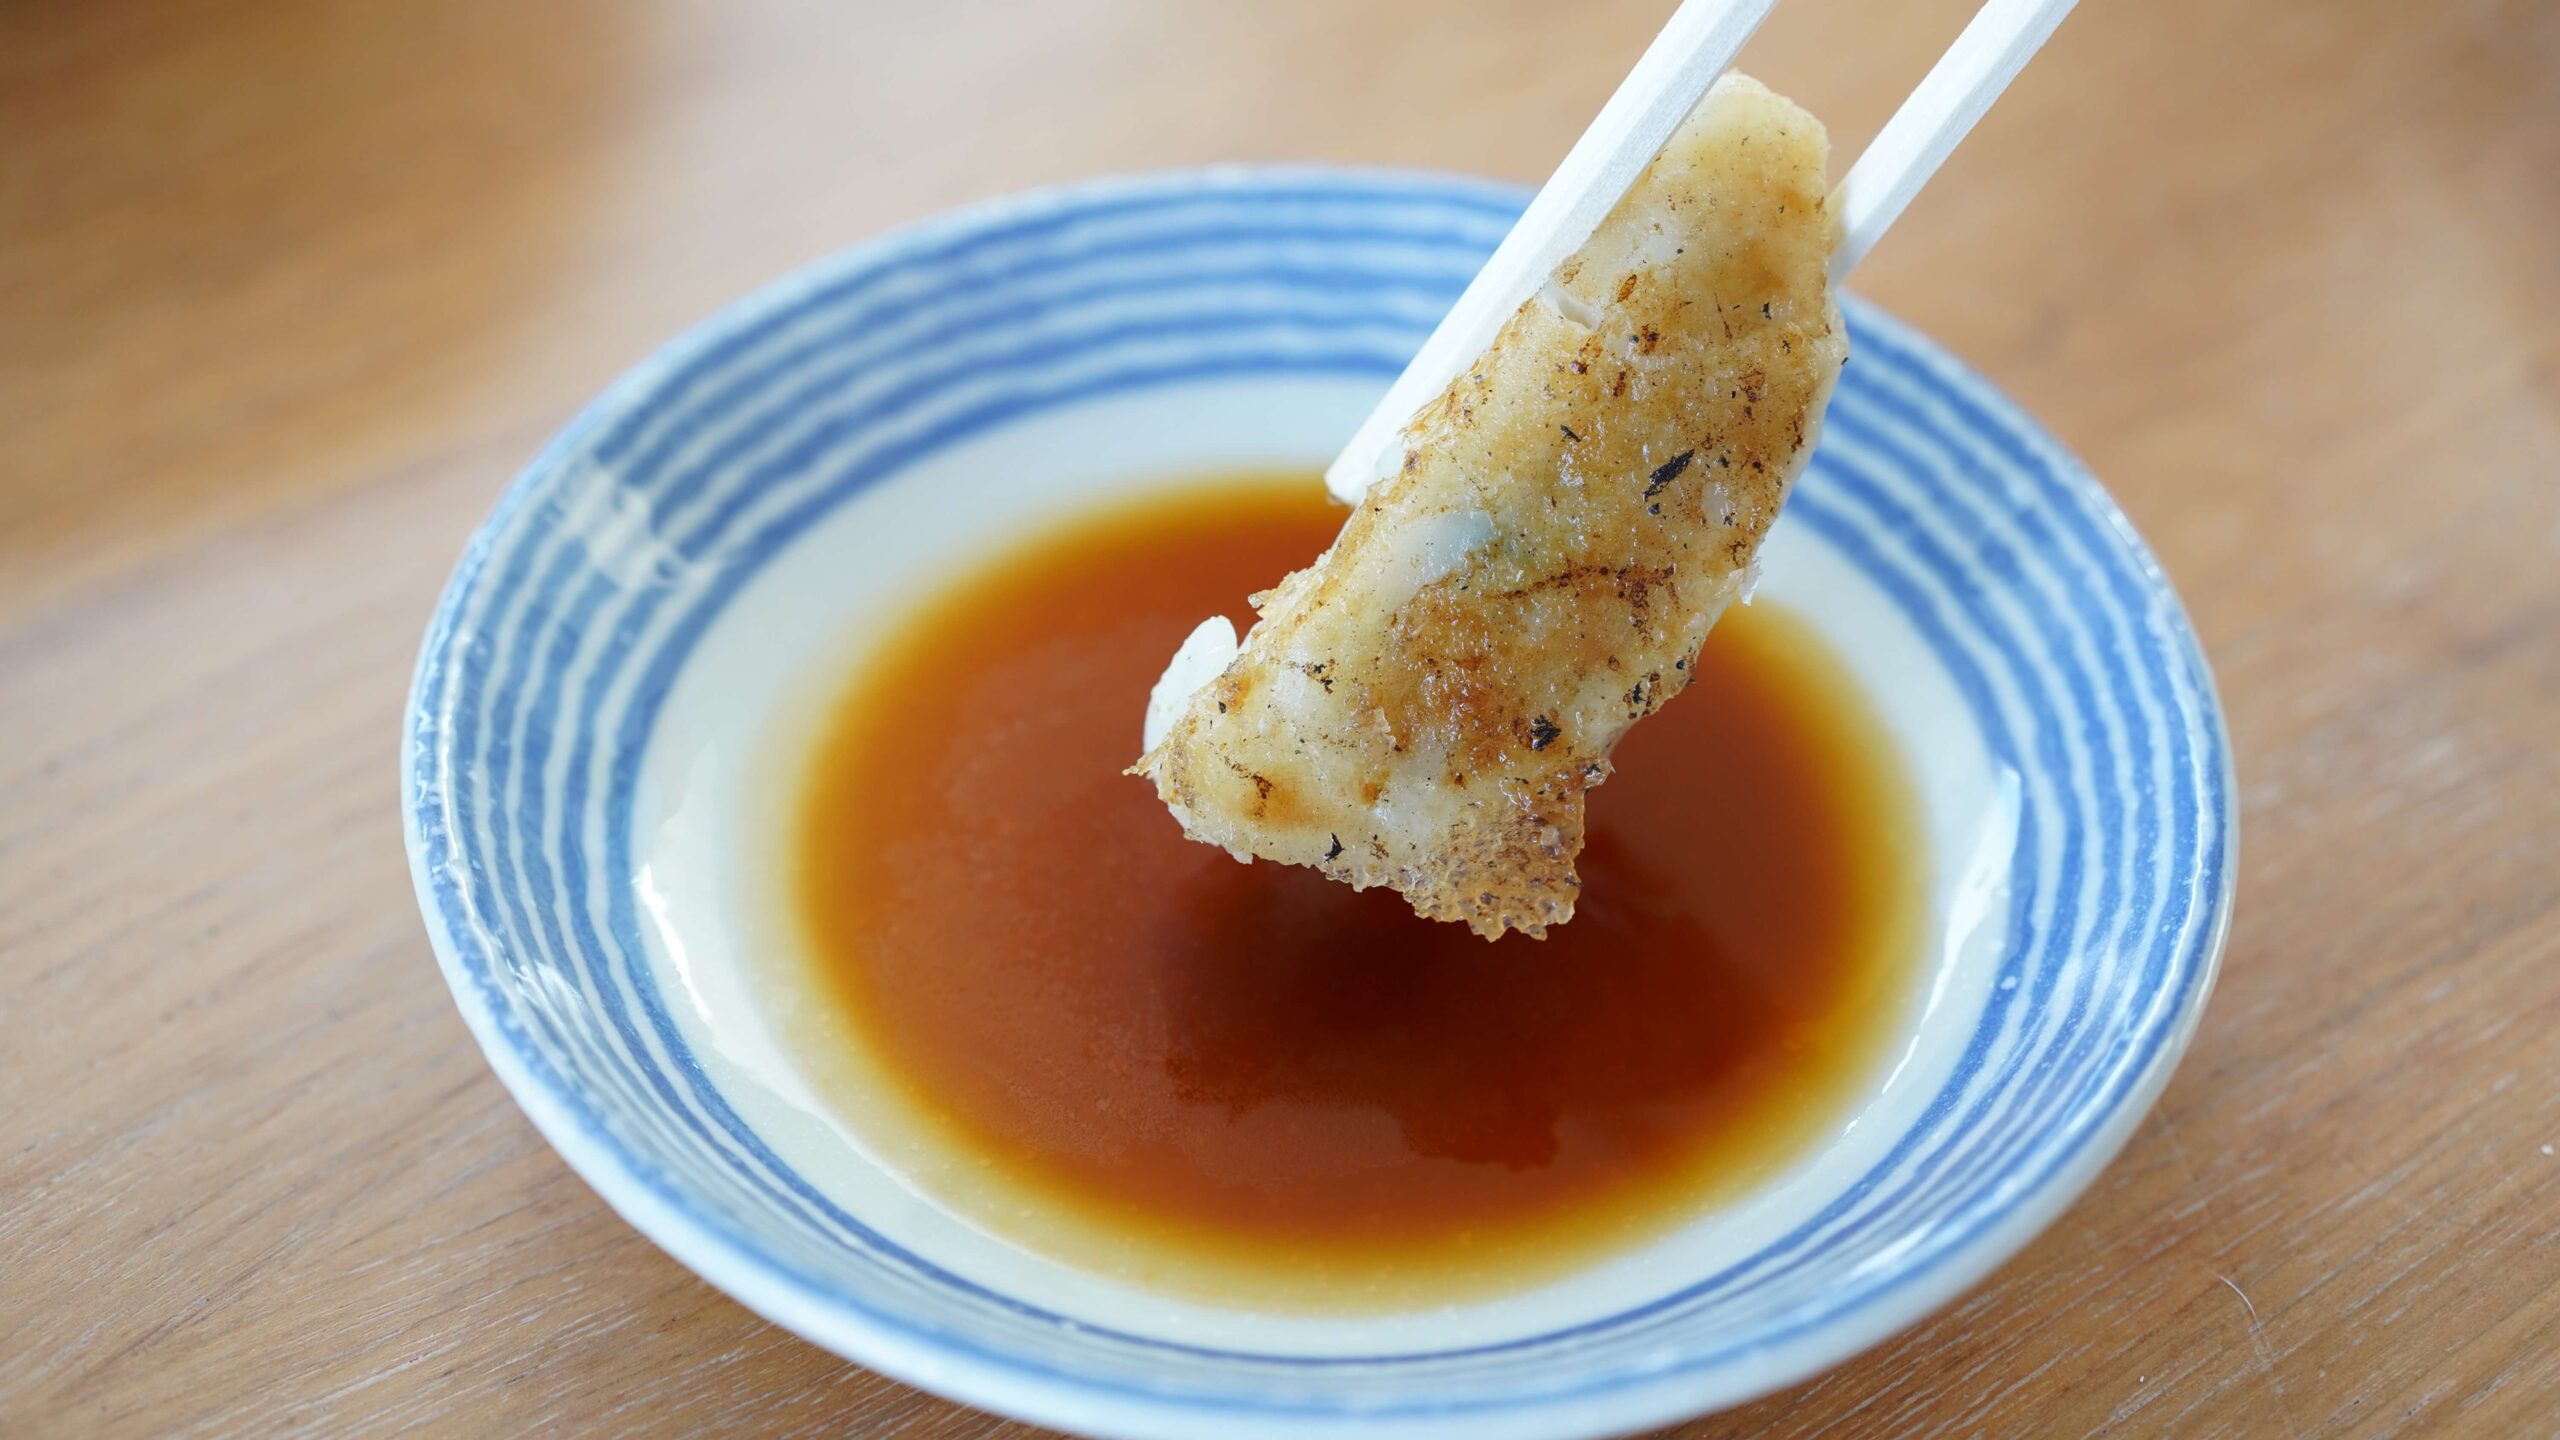 イオン・トップバリュおすすめ冷凍食品「ギョーザ」を箸で持ち上げている写真